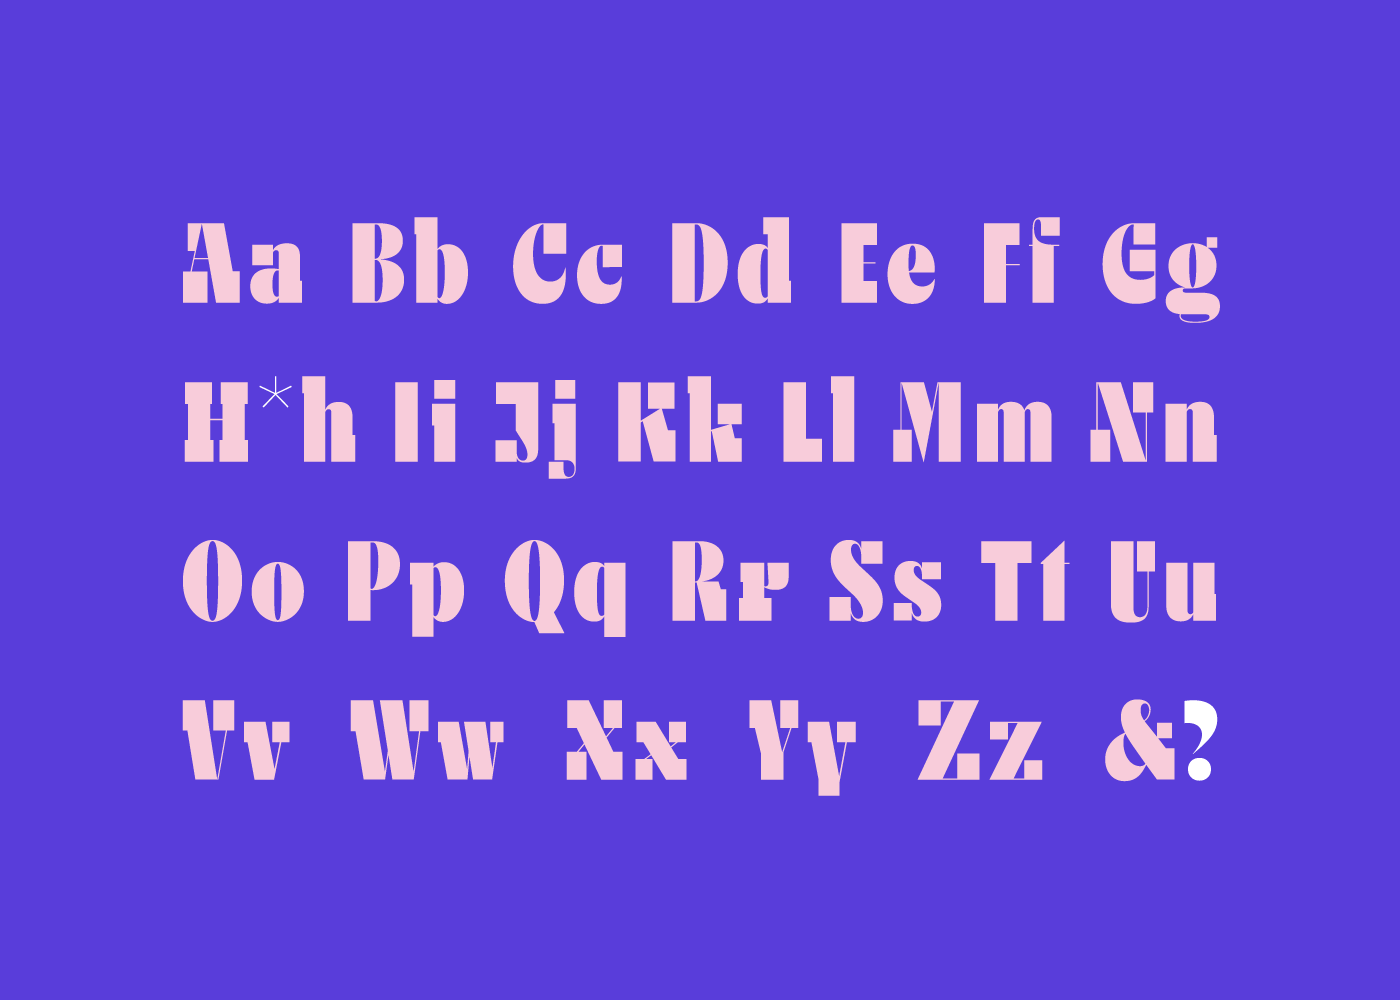 Display experimental font free new sans serif slab Typeface